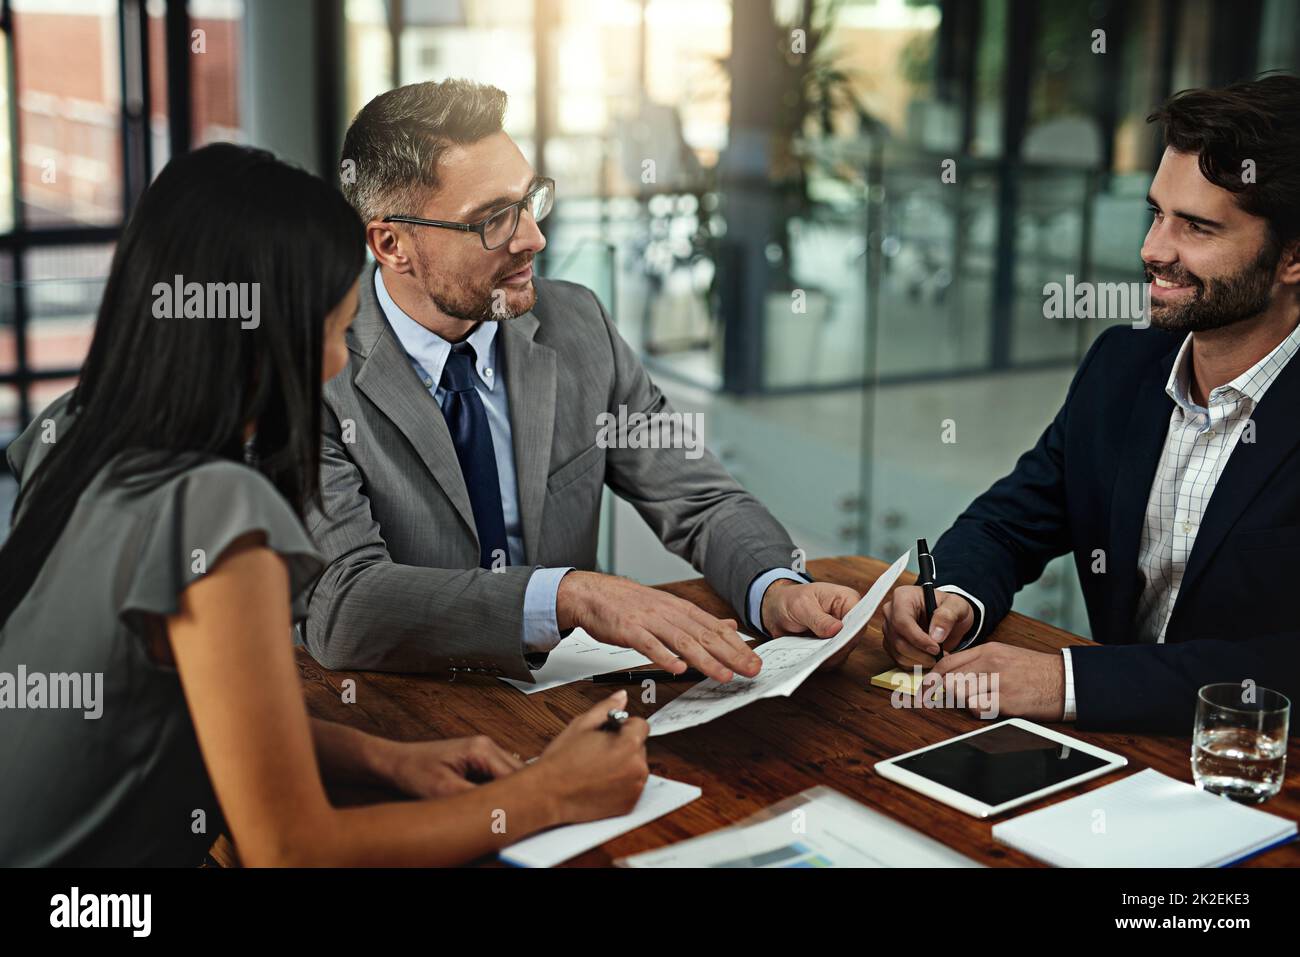 Haben Sie das alles selbst gemacht? Aufnahme einer Gruppe von Geschäftsleuten, die sich im Sitzungssaal treffen. Stockfoto